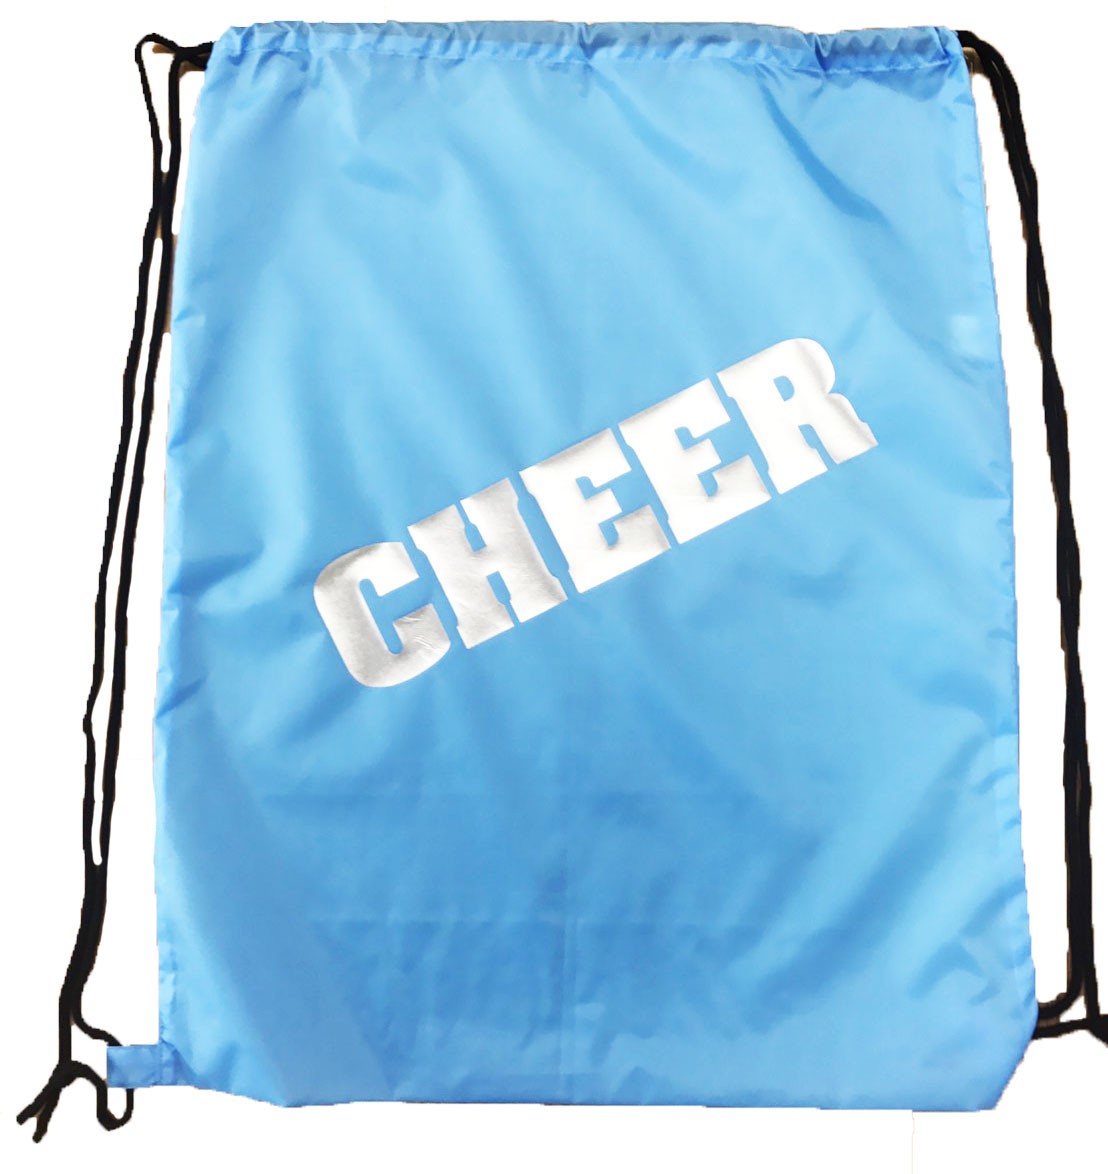 CHEER rucksack type laundry bag blue Cheer goods 